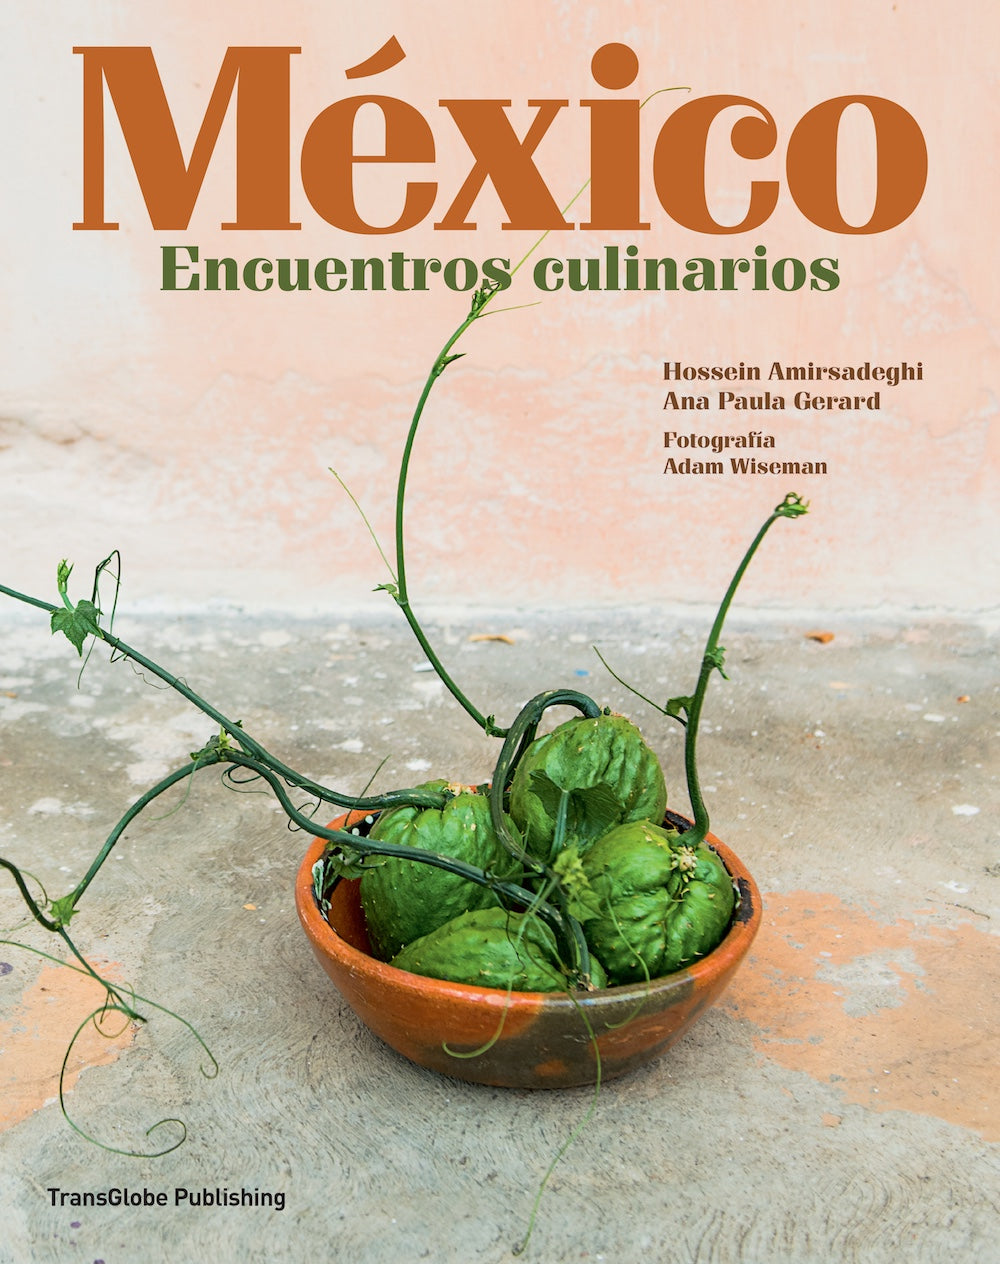 México: Encuentros culinarios (Spanish edition)